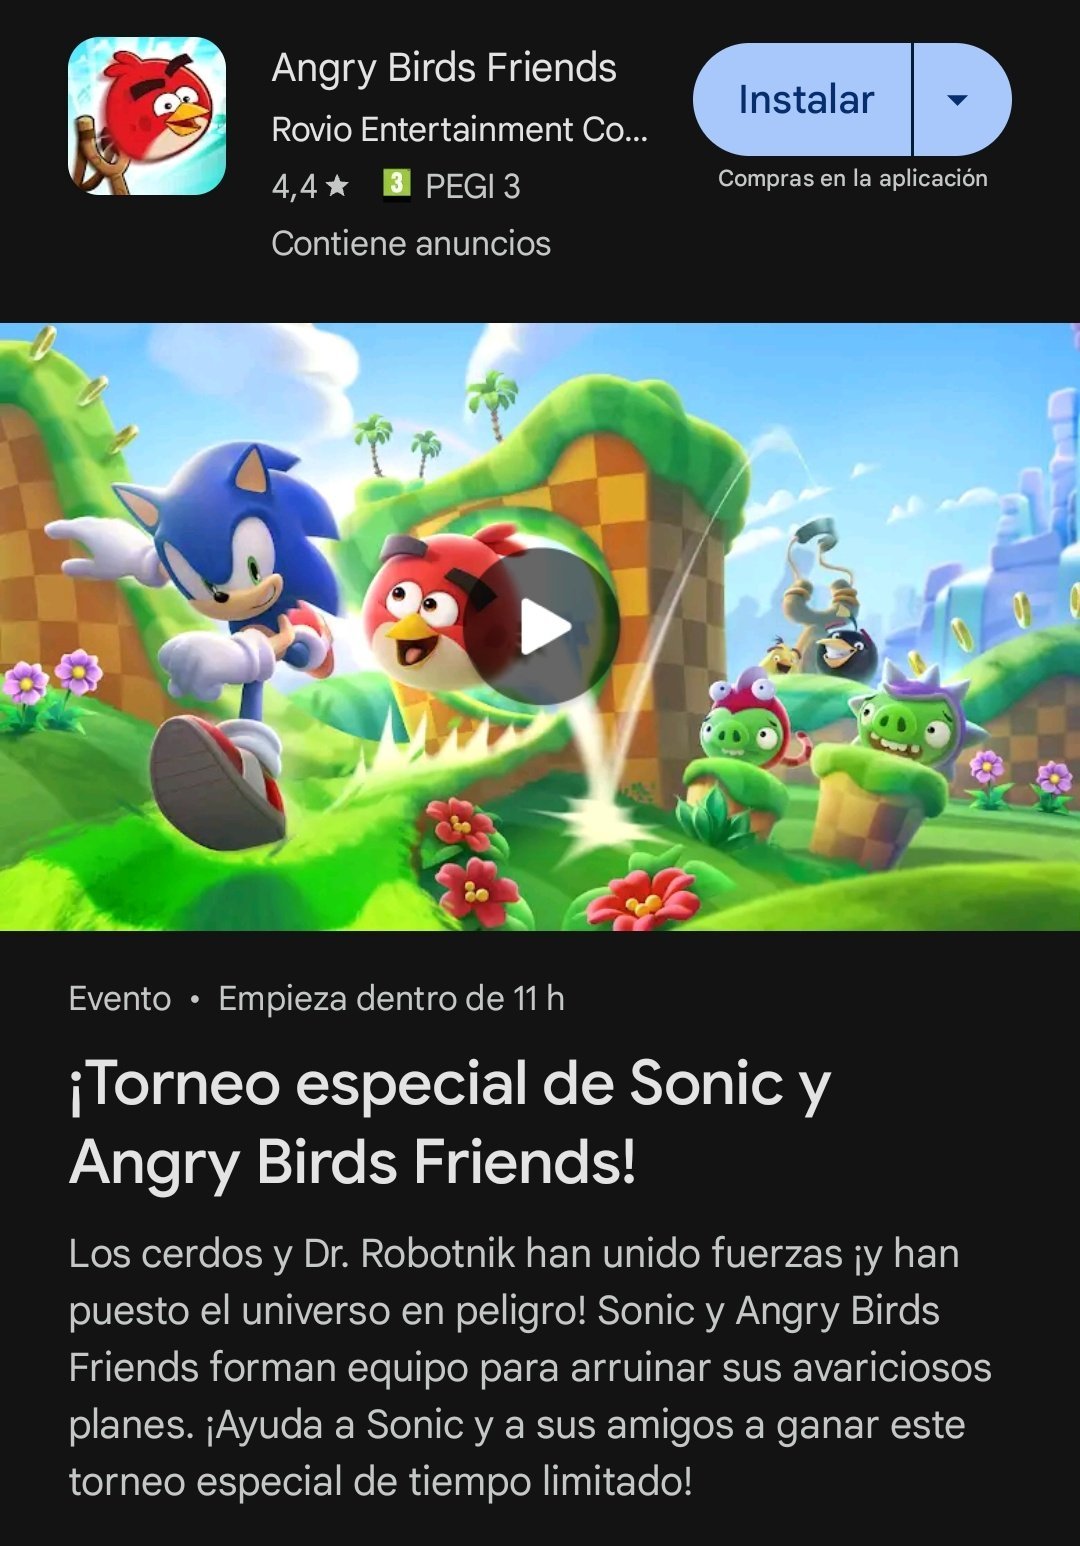 Sonic The Hedgehog x Angry Birds anuncian colaboración,¿Nuevo juego en camino? 2